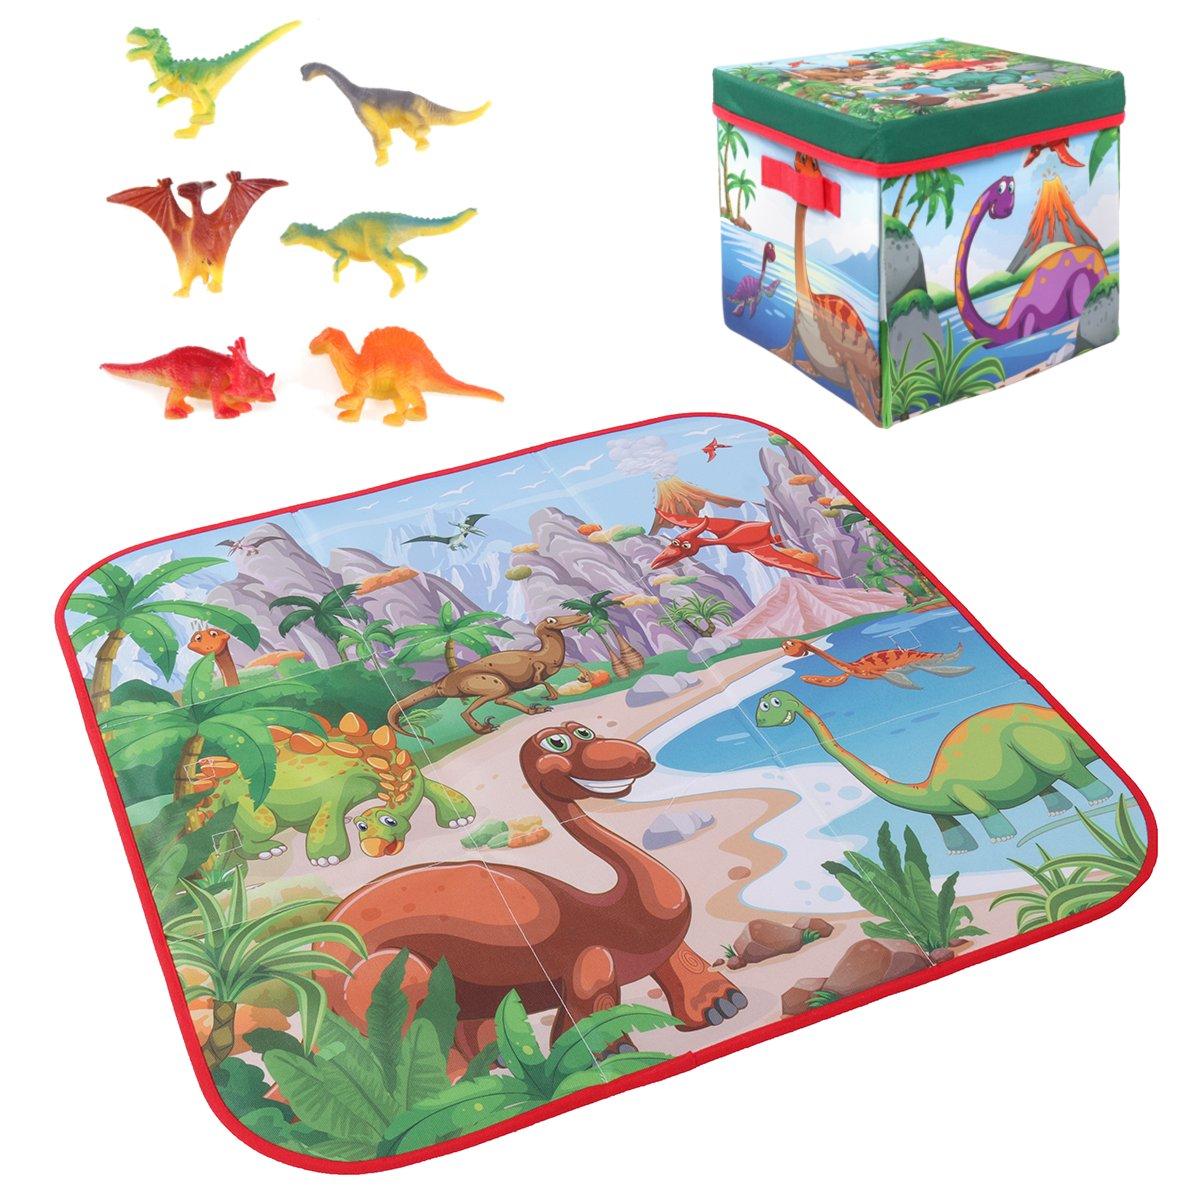 72x72cm Kinder Cartoon Spielmatte + 6 Dinosaurier Spielzeug Quadratische Faltbox Campingmatte Kind Kleinkind Krabbel Picknick Teppich